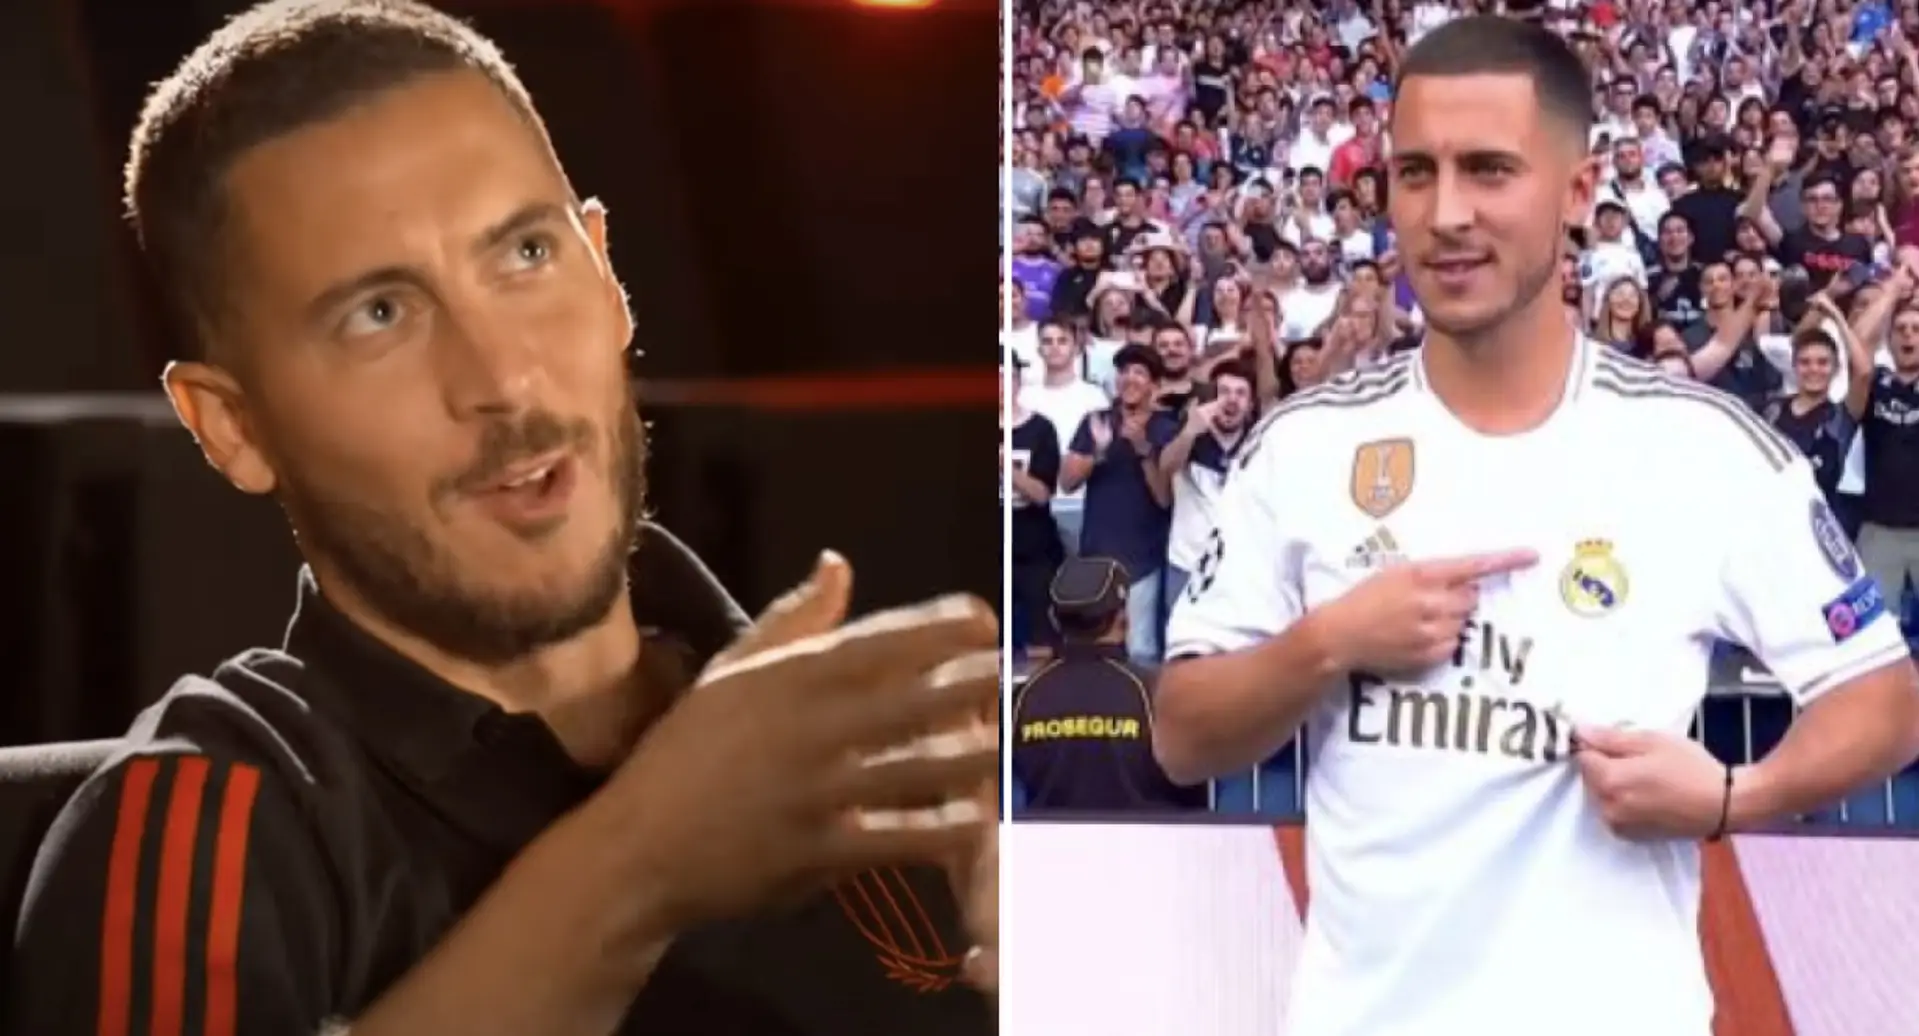 "Das passt nicht zu mir": Eden Hazard spricht endlich darüber, was für ihn bei Real Madrid schief gelaufen ist